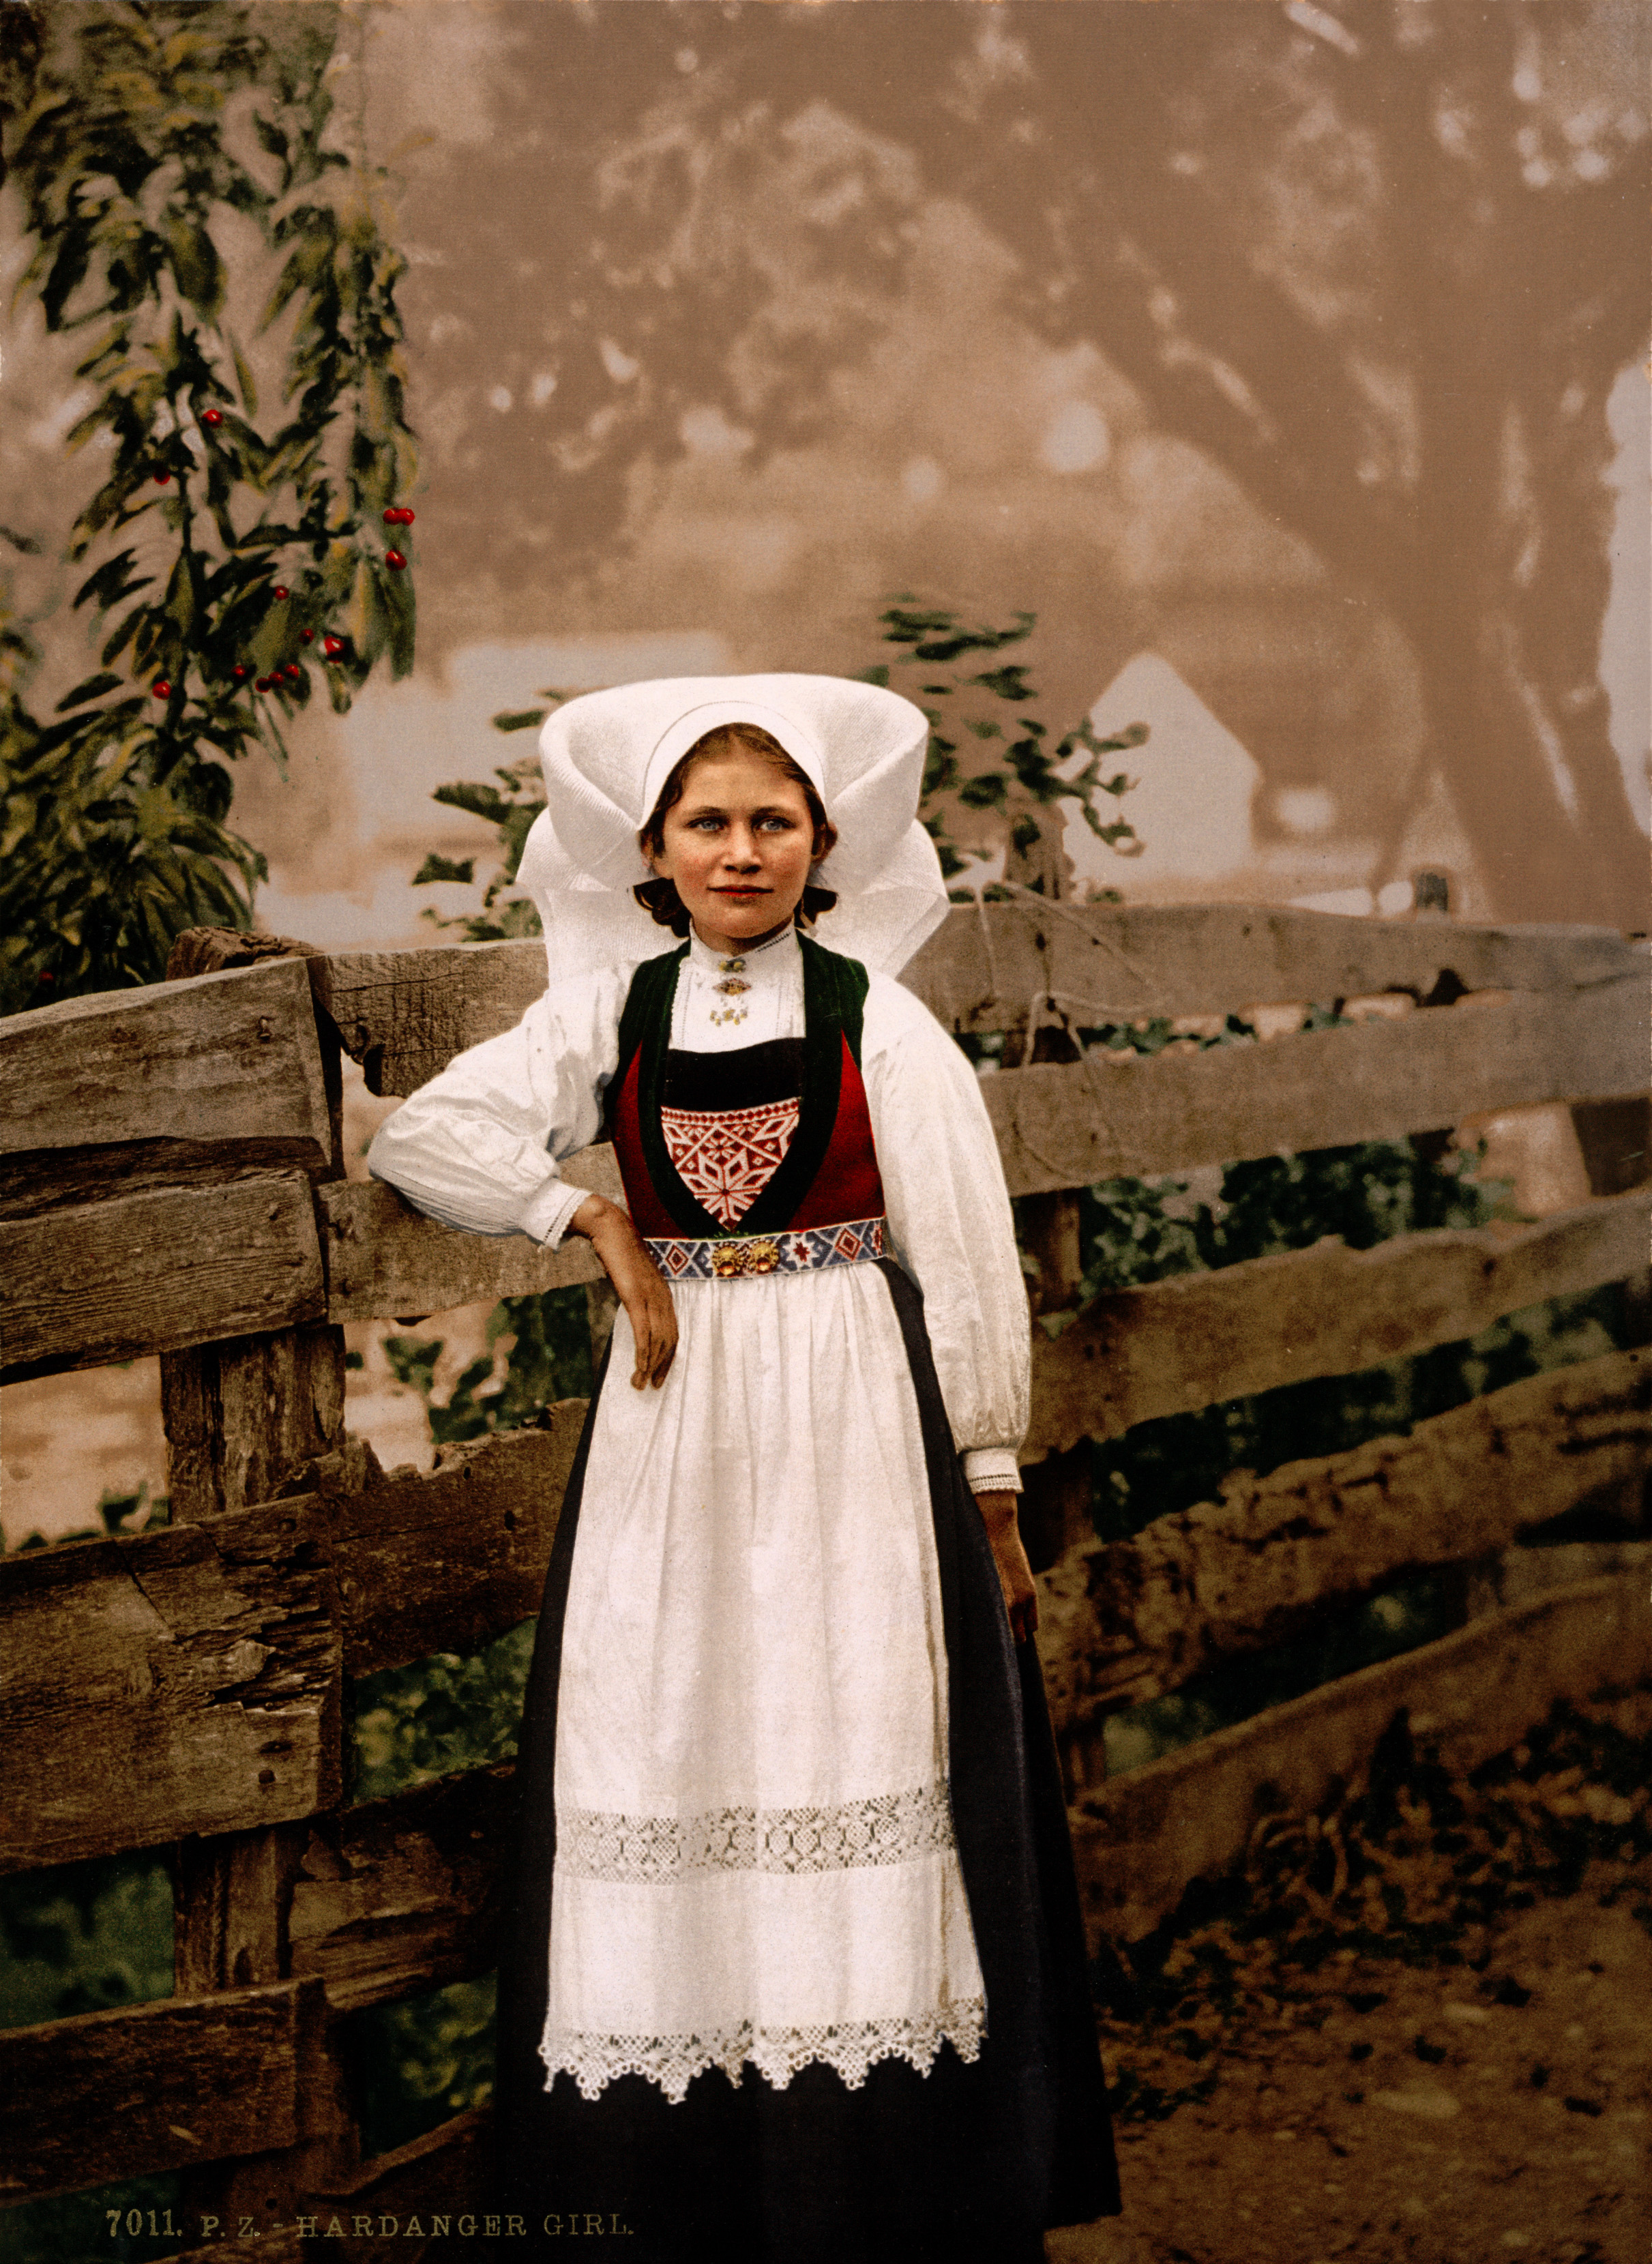 Hardanger girl, Hardanger Fjord, Norway, ca. 1897